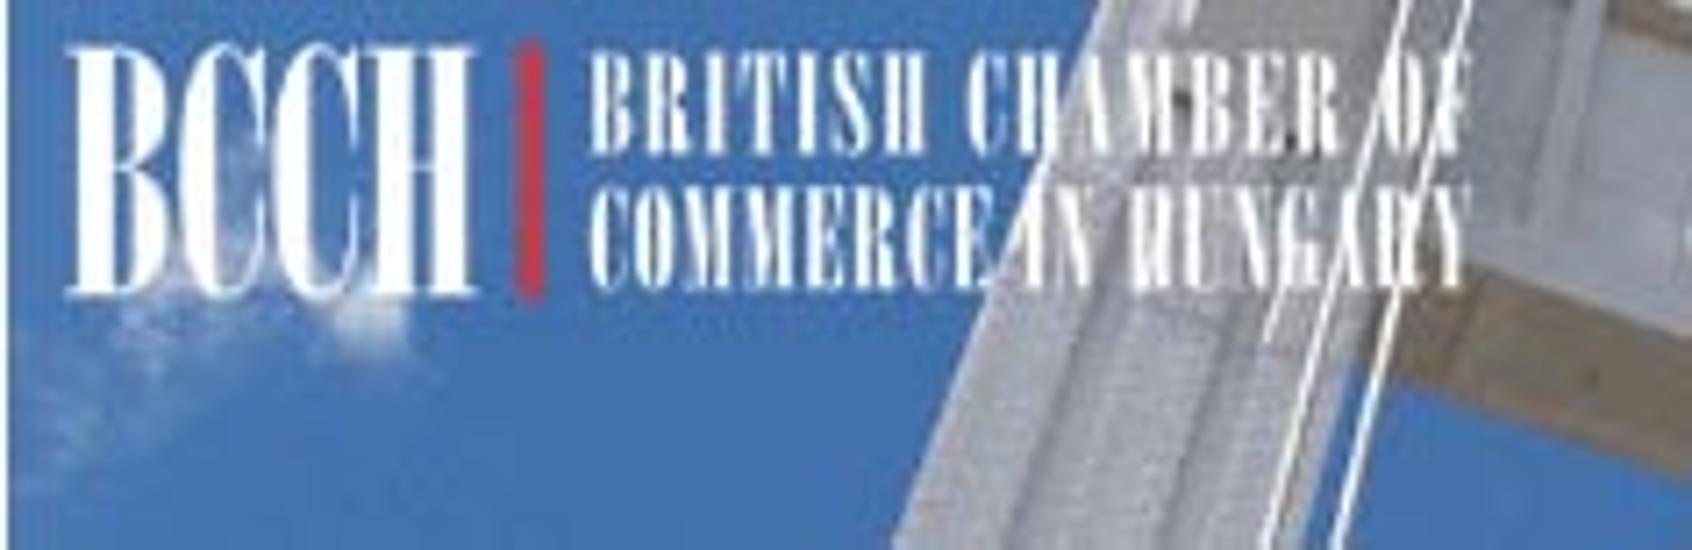 British Chamber of Commerce in Hungary